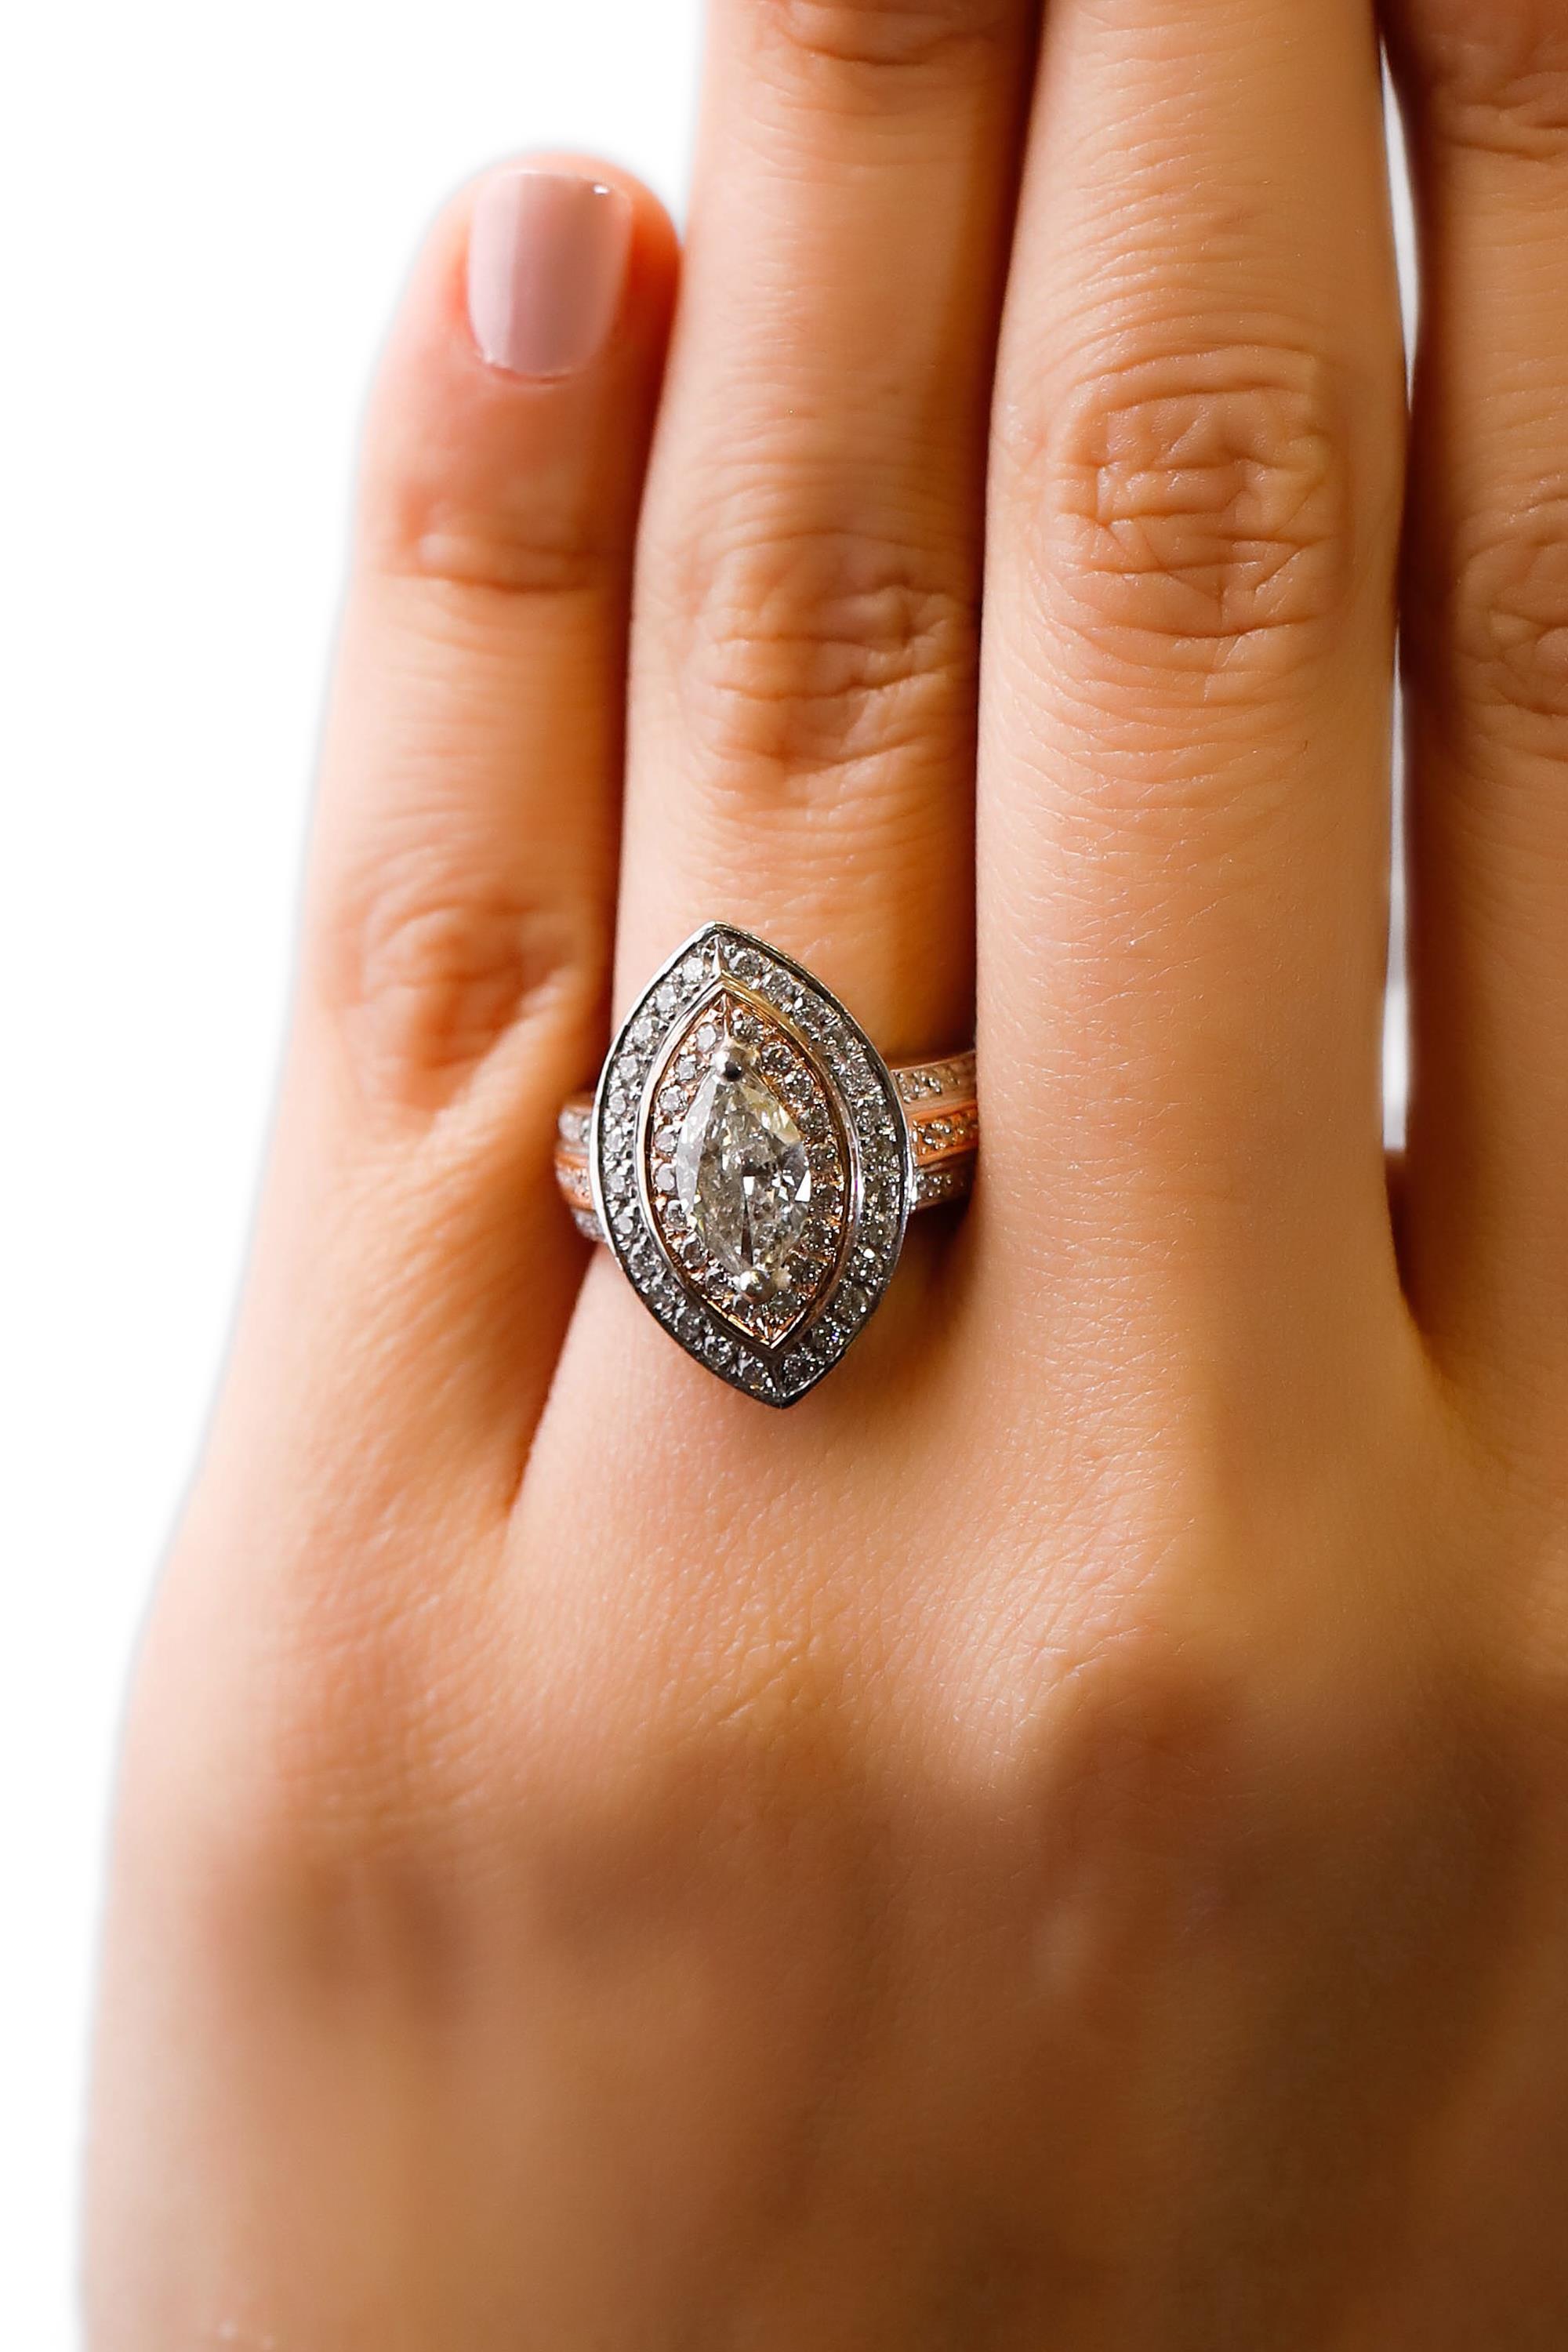 2.9 carat oval diamond ring